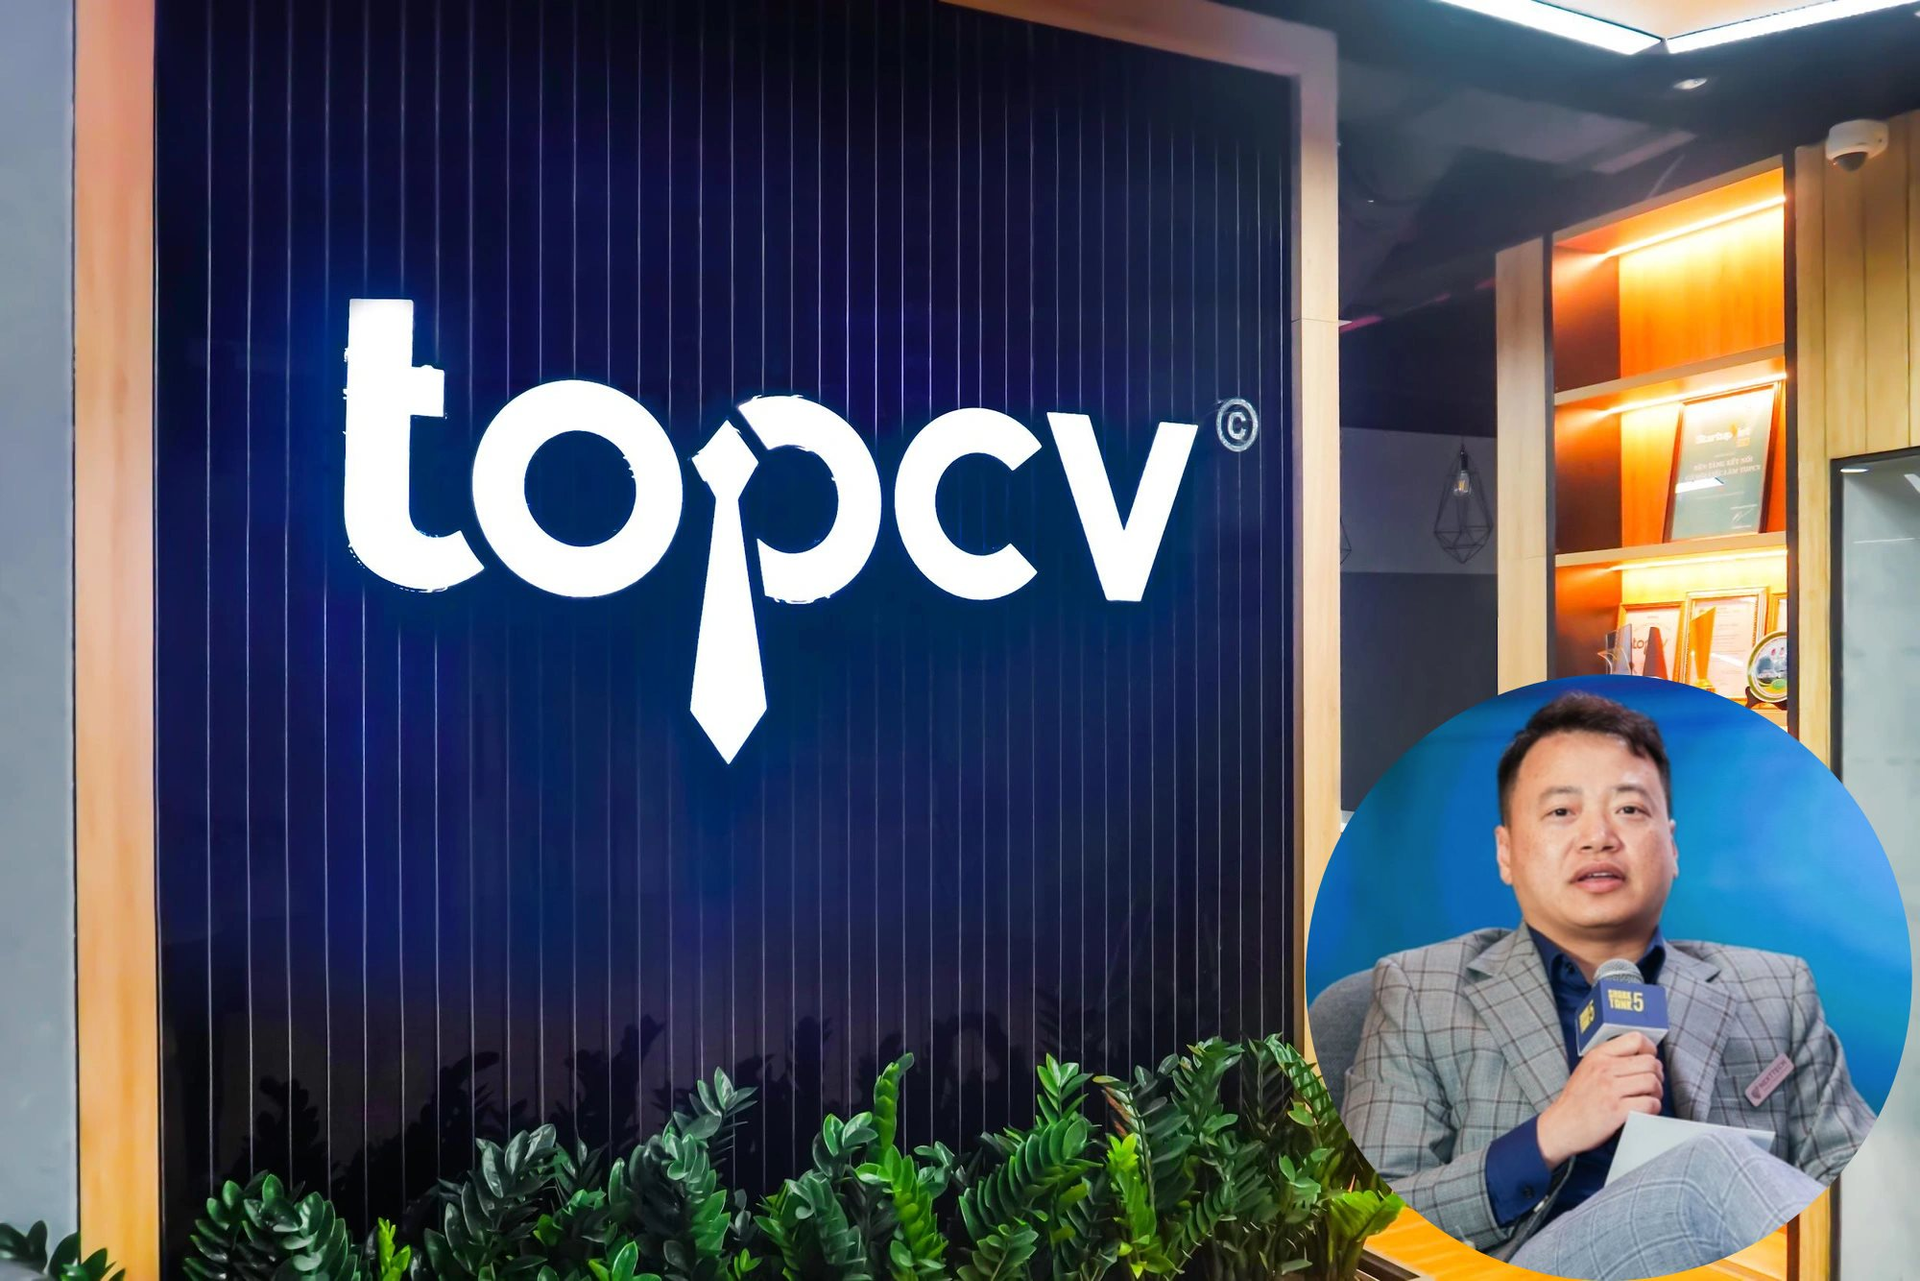 TopCV nhận vốn hàng chục triệu USD từ đại gia Nhật, Shark Bình hân hoan khoe khoản lãi “tỷ suất lợi nhuận hàng chục lần sau 4 năm” - Ảnh 1.